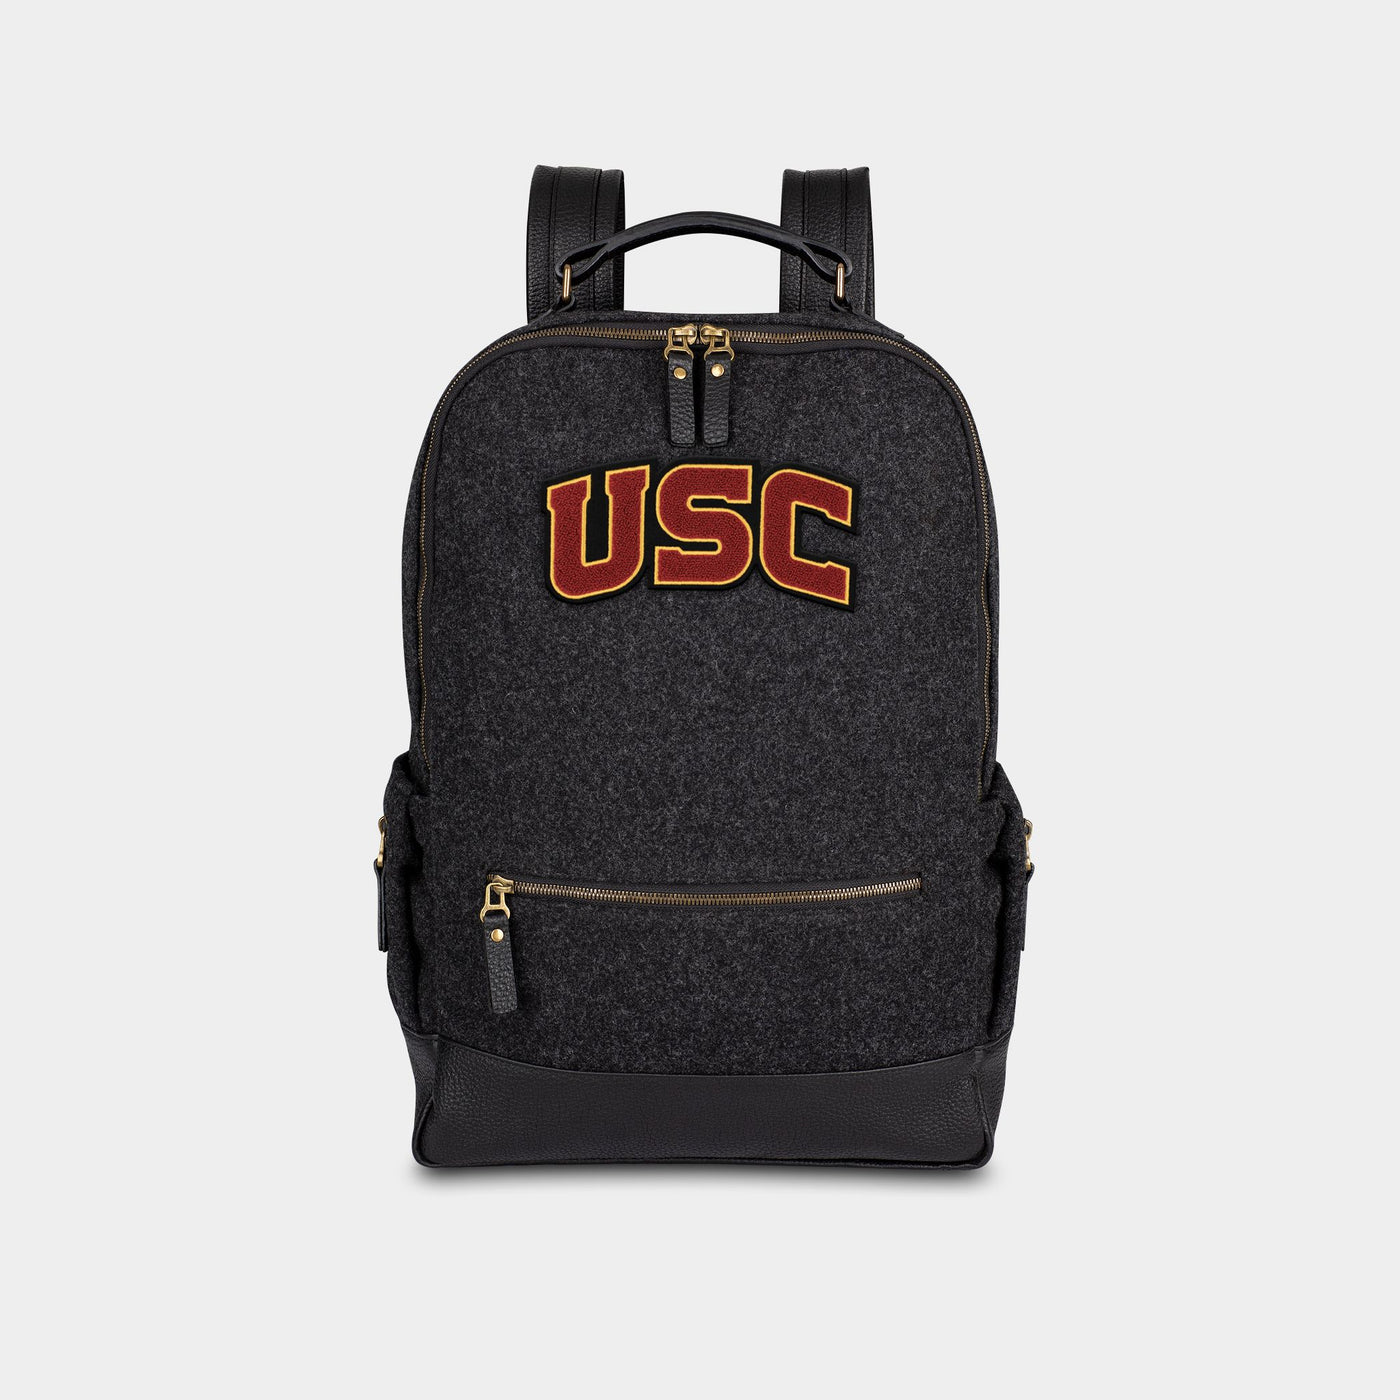 USC Trojans "USC" Backpack